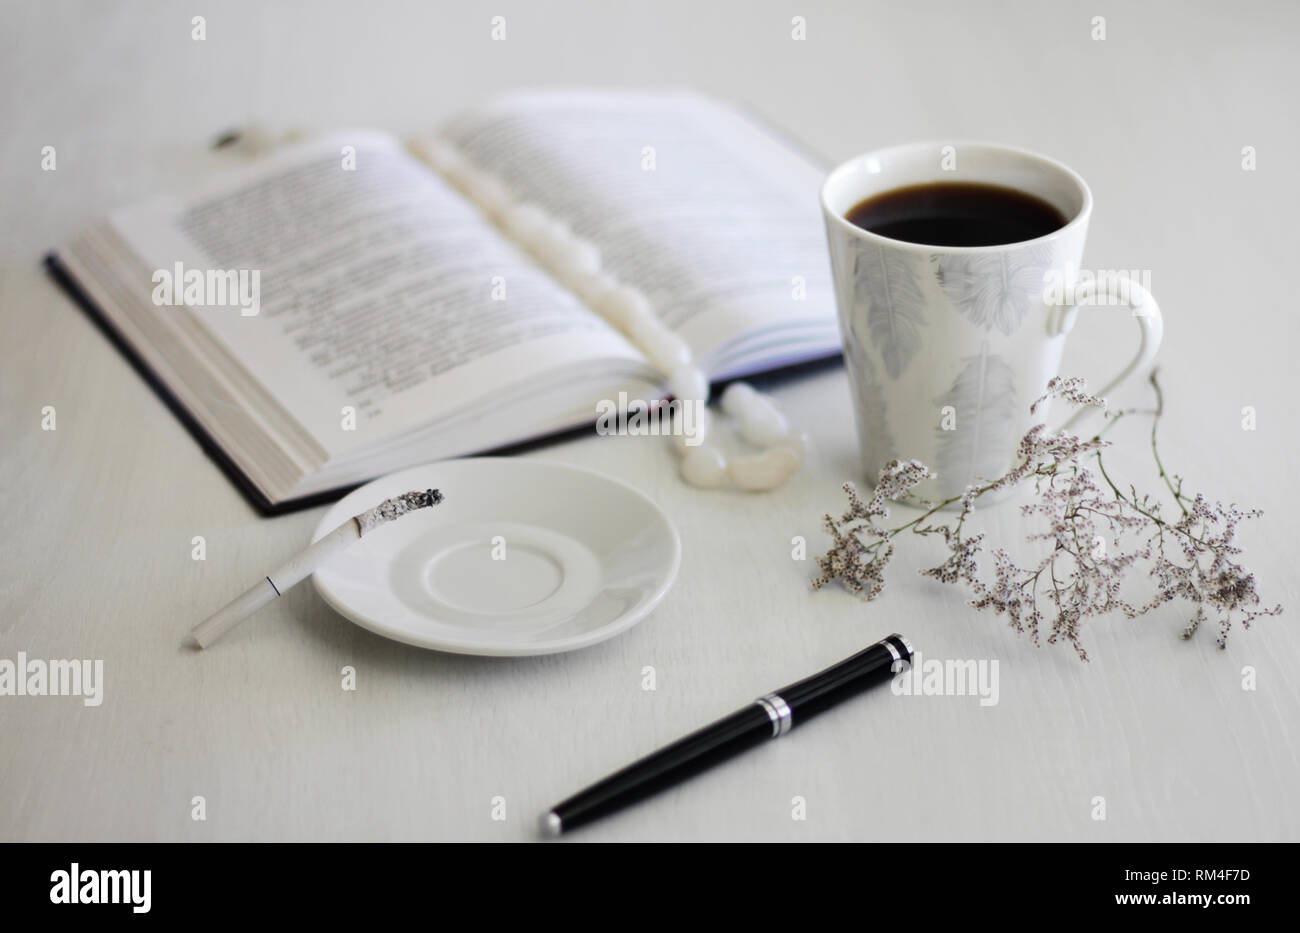 Morgenstimmung weibliche Hände eine Tasse Kaffee, ein Notebook und ein Rauchen Zigarette auf einem weißen Tisch Stockfoto